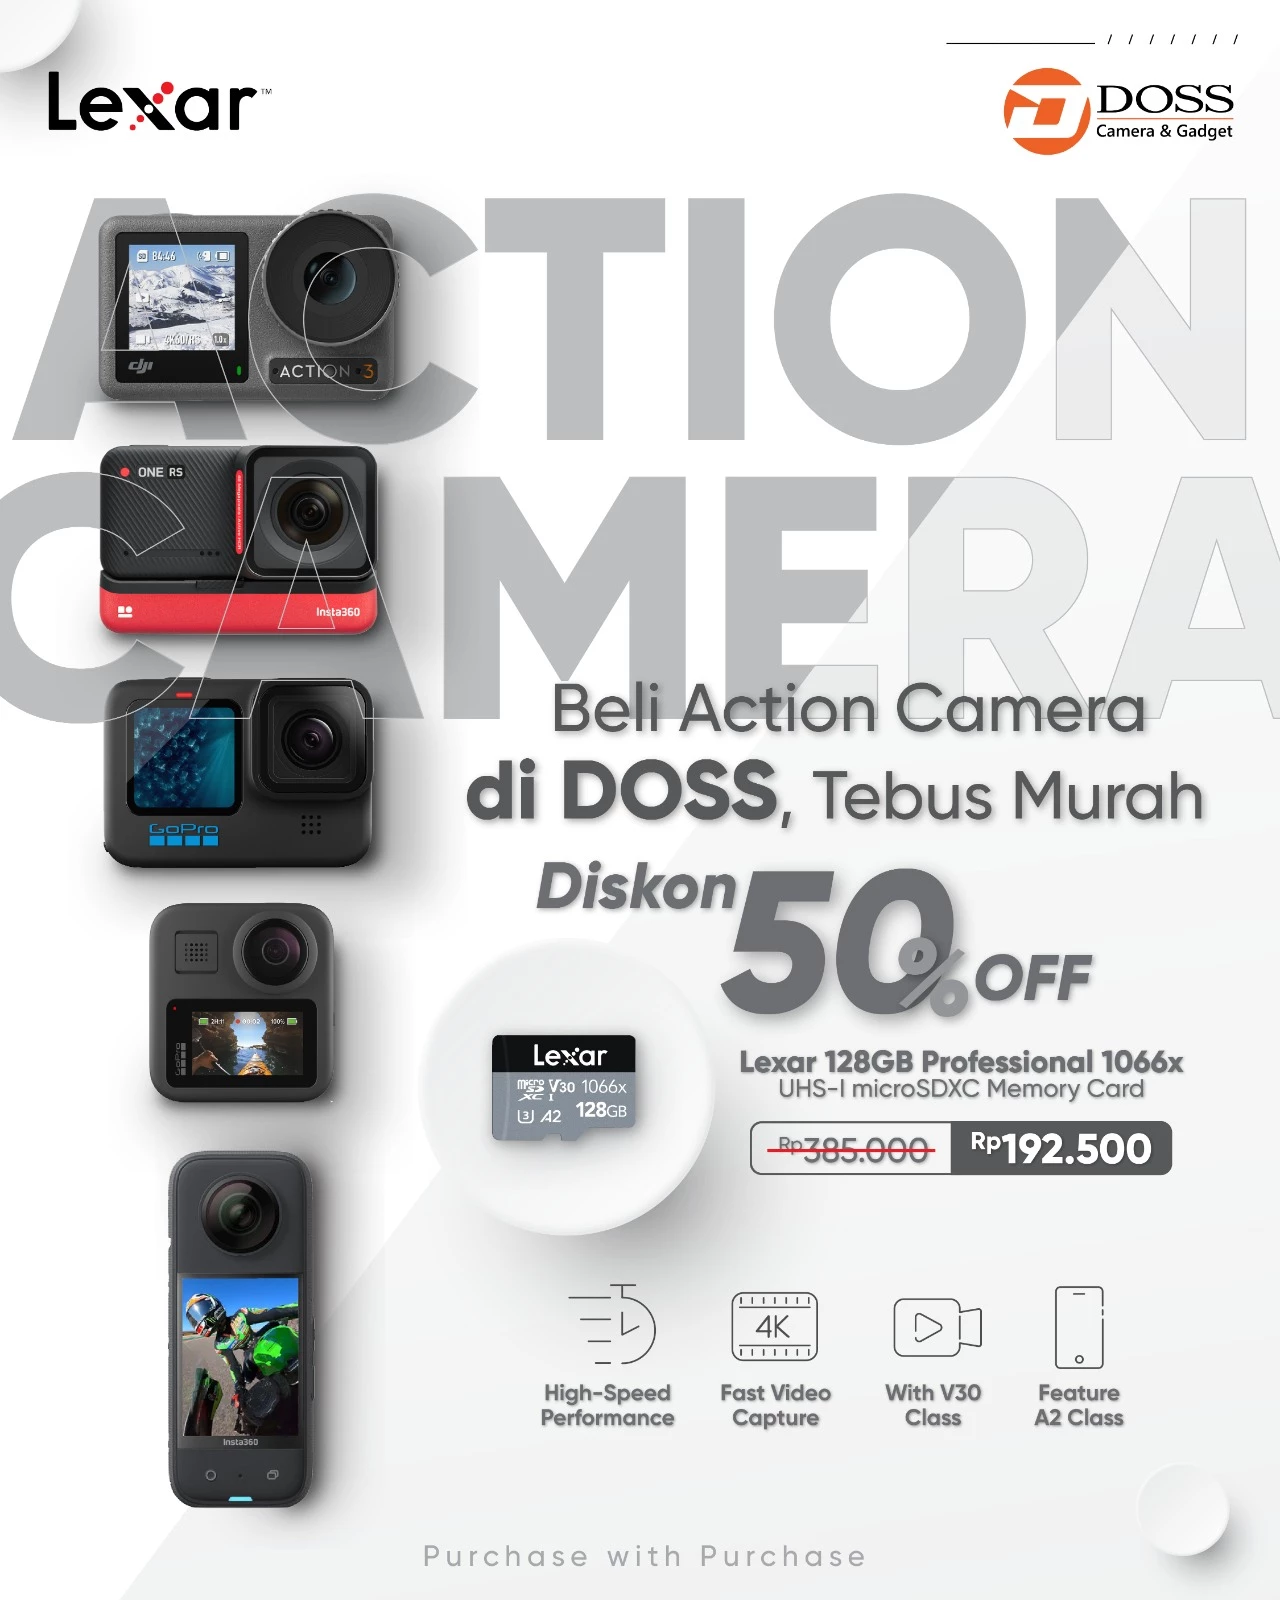 Membeli Action Cam dan Drone di DOSS kamu bisa tebus murah Memory Card Lexar yang akan kamu dapatkan dengan potongan 50%.